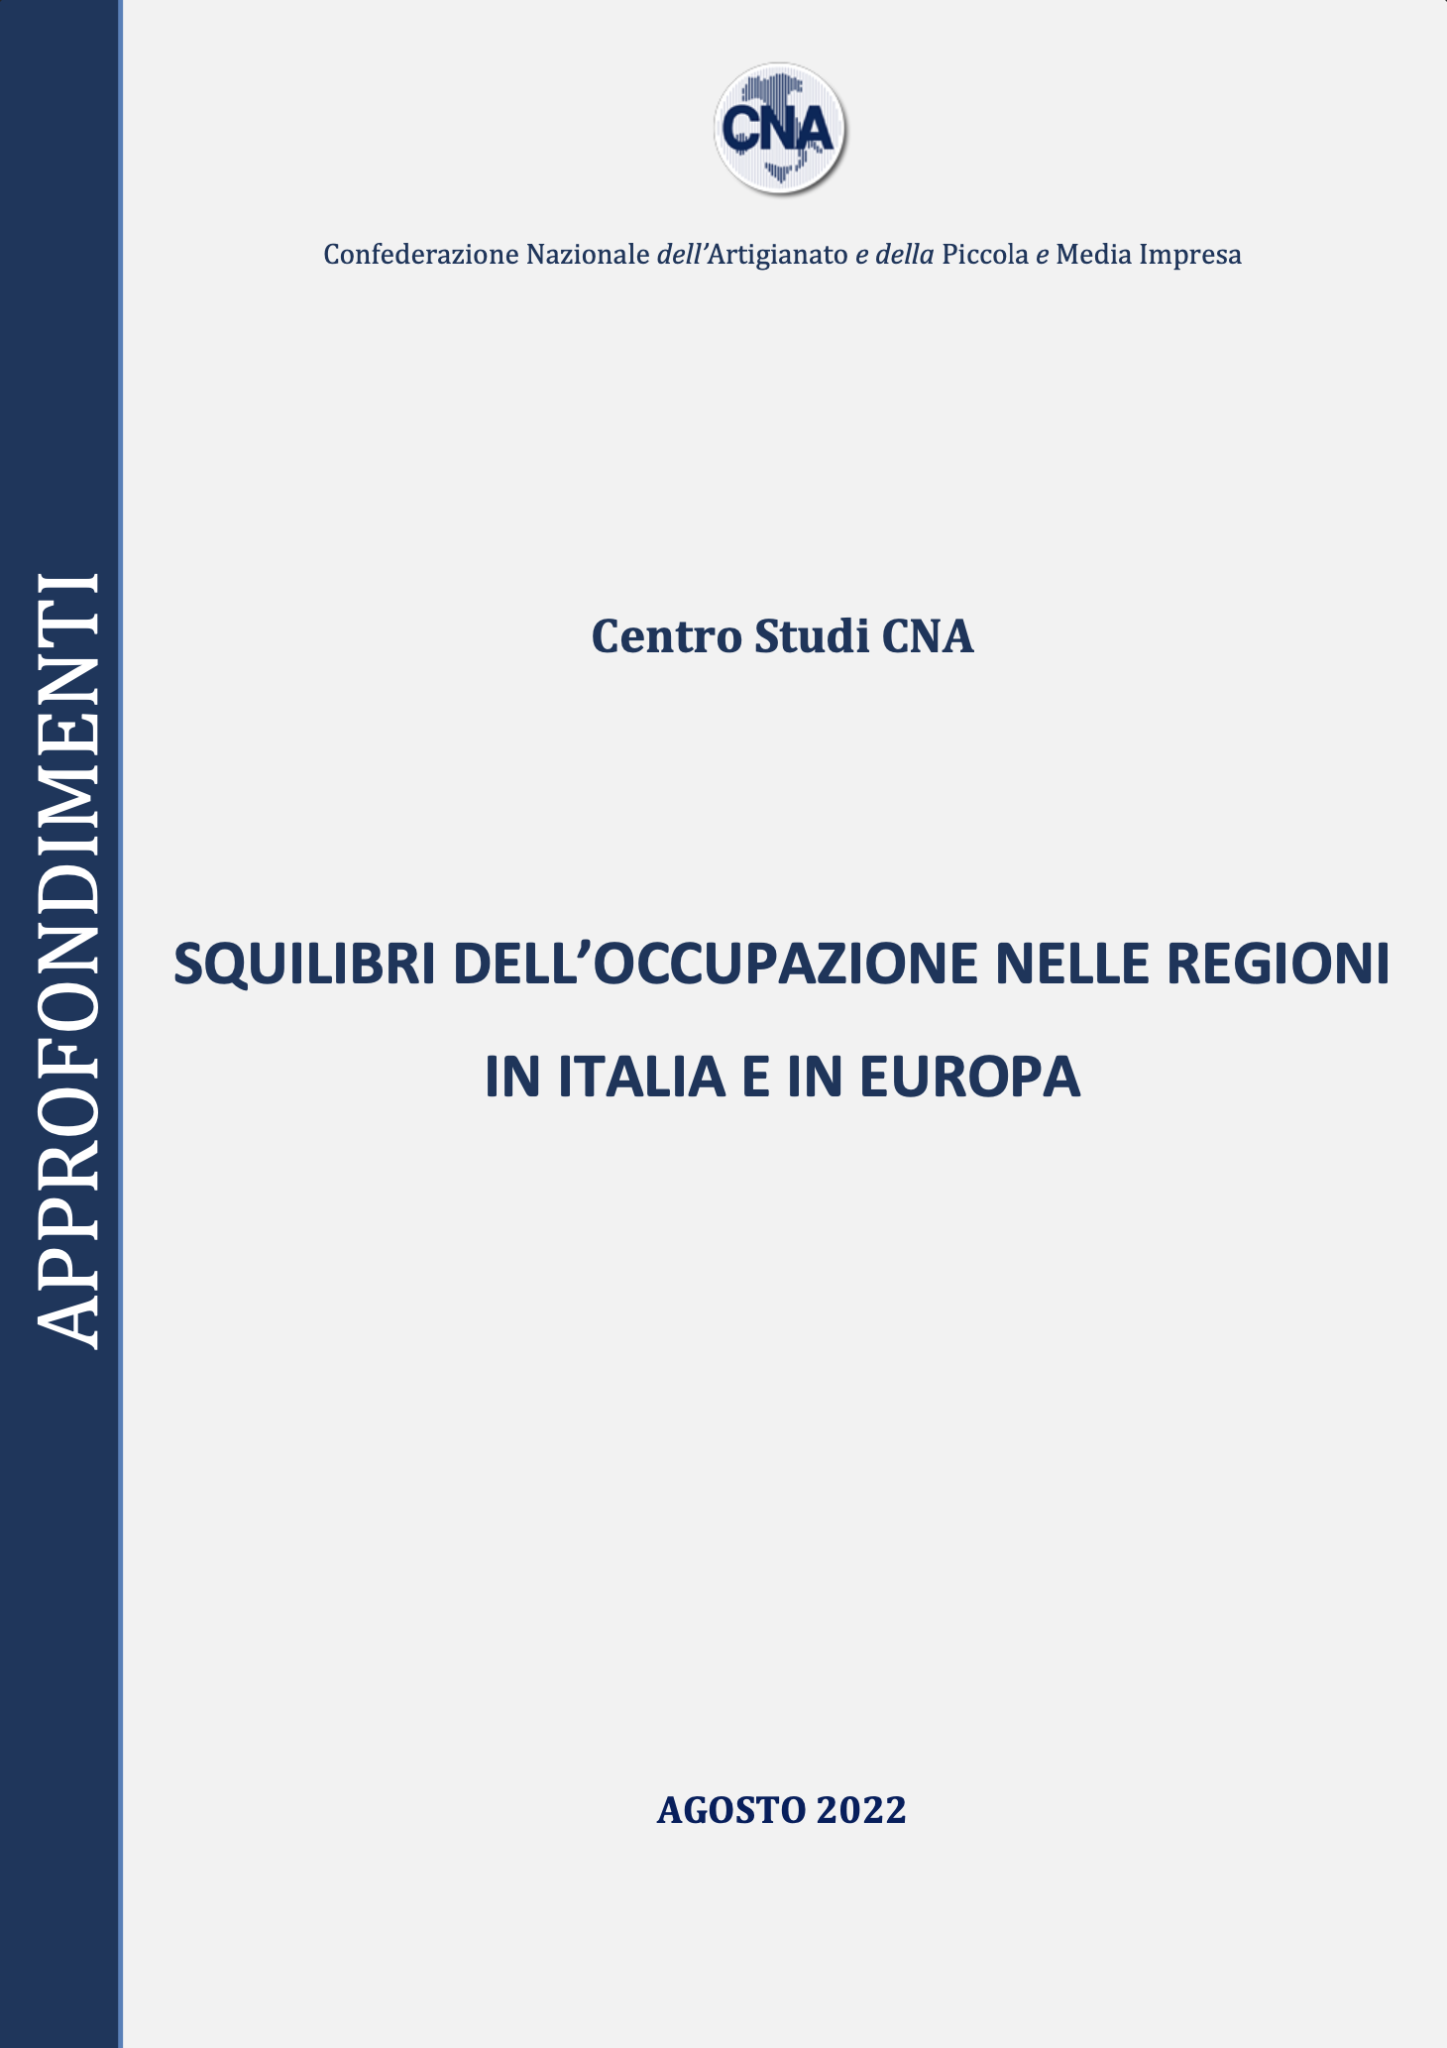 Squilibri dell’occupazione nelle regioni in Italia e in Europa